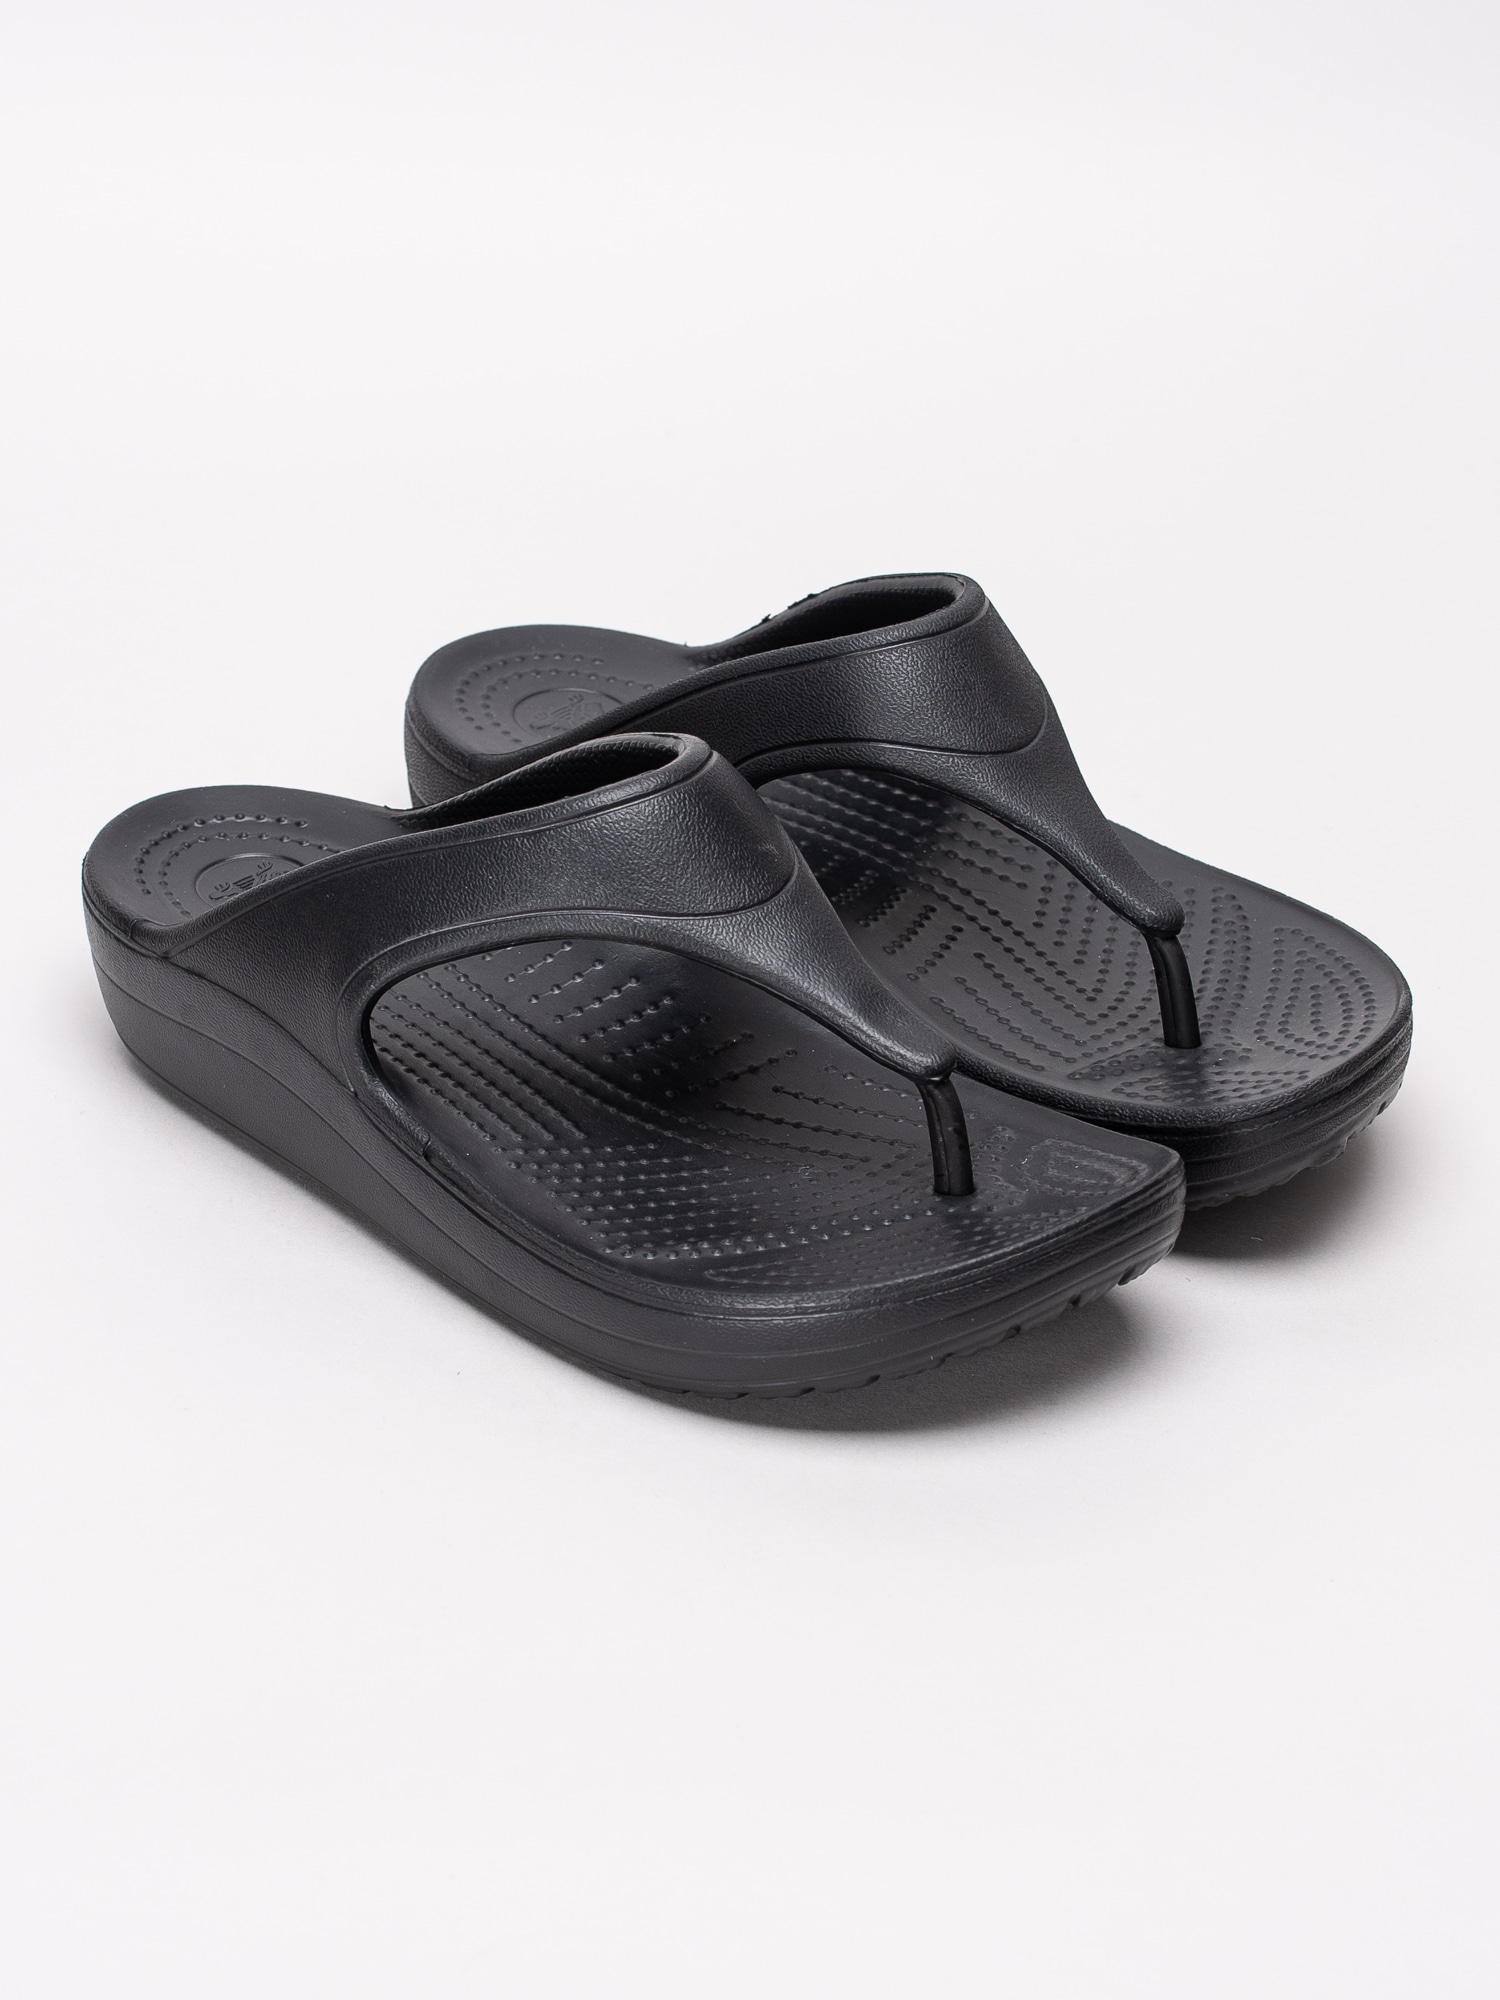 65191019 Crocs Sloane Platform Flip W 200486-001 svarta flipflops sandaler med kilklack-3